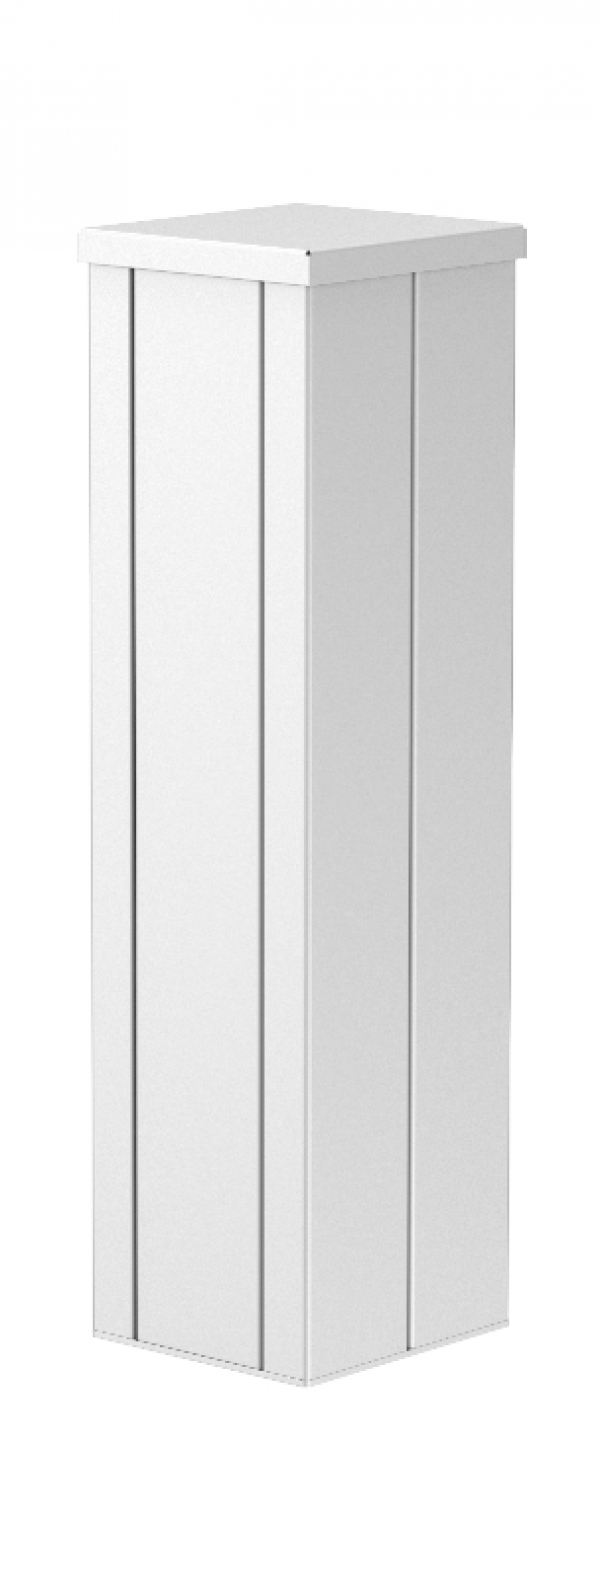 6290030 - OBO BETTERMANN Электромонтажная миниколонна 0,5 м 2-х сторонняя 140x133x500 мм (алюминий,белый) (ISSHS140500RW).